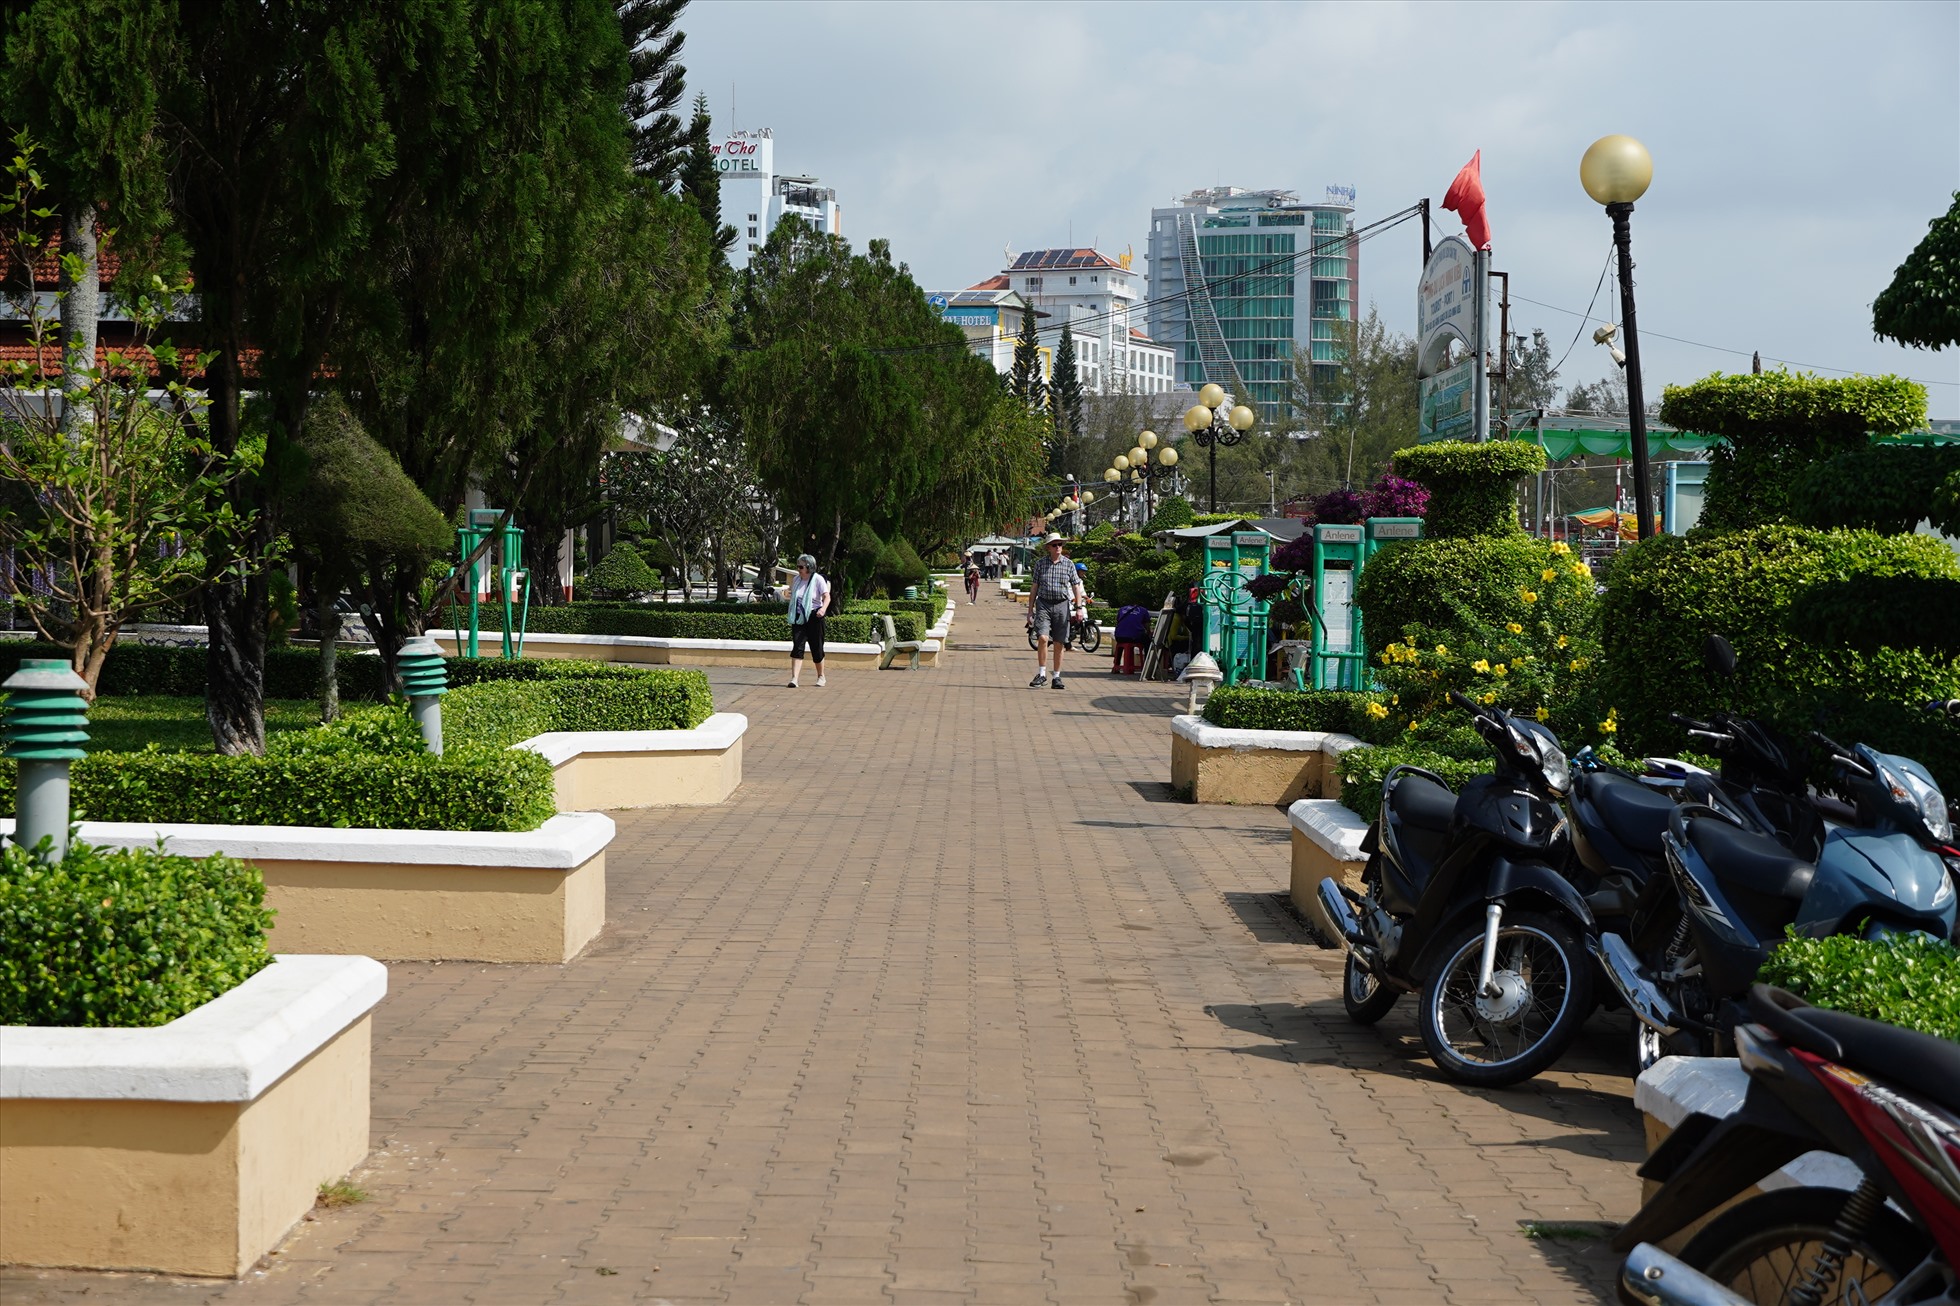 Còn công viên bến Ninh Kiều (quận Ninh Kiều), nơi được xem là điểm du lịch trung tâm của thành phố, cũng chỉ có một nhà vệ sinh.